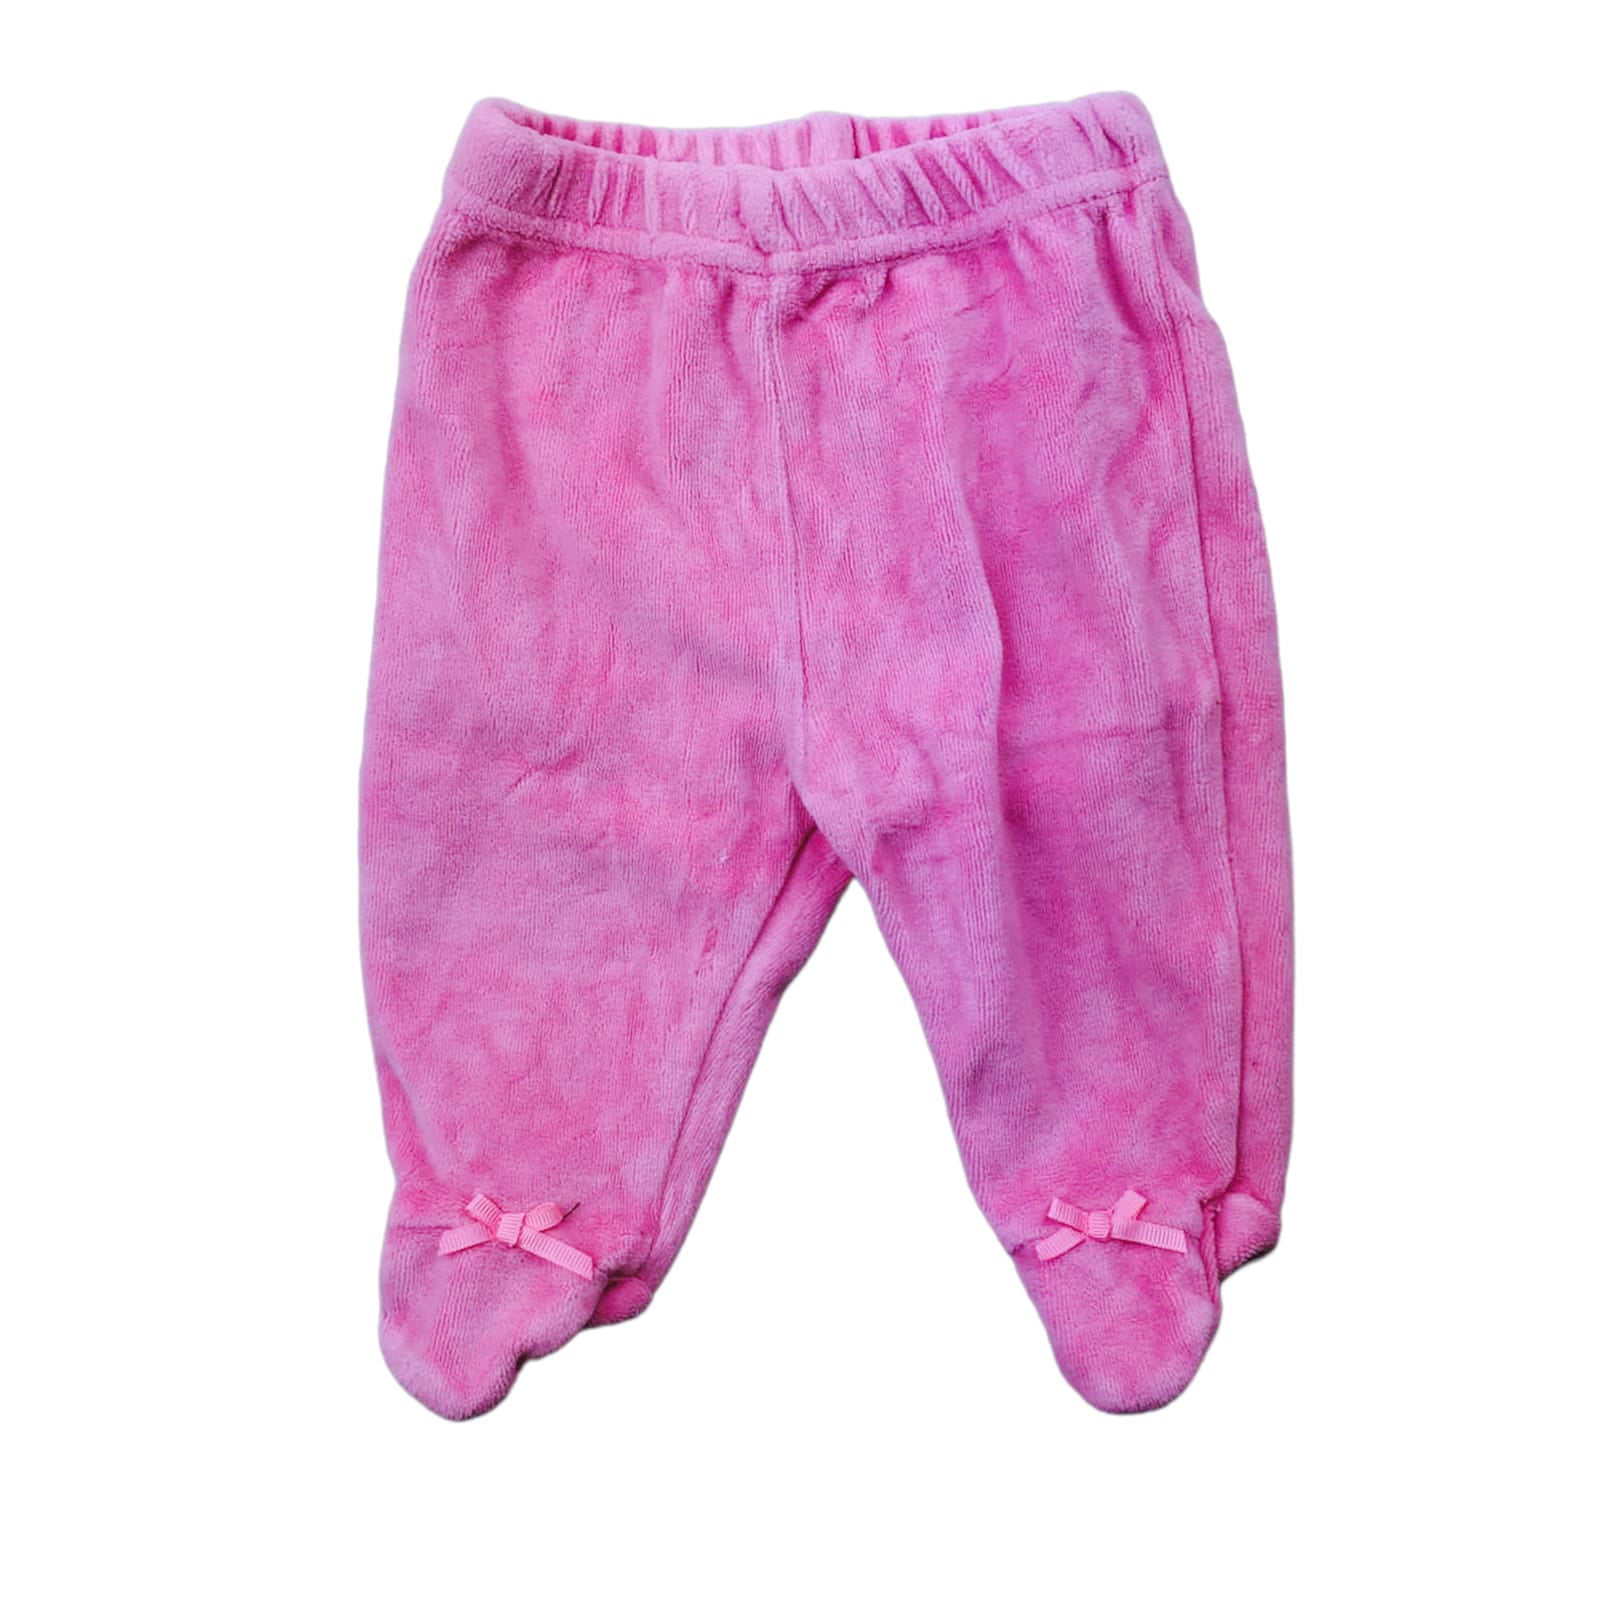 Panty de plush rosada con lazos